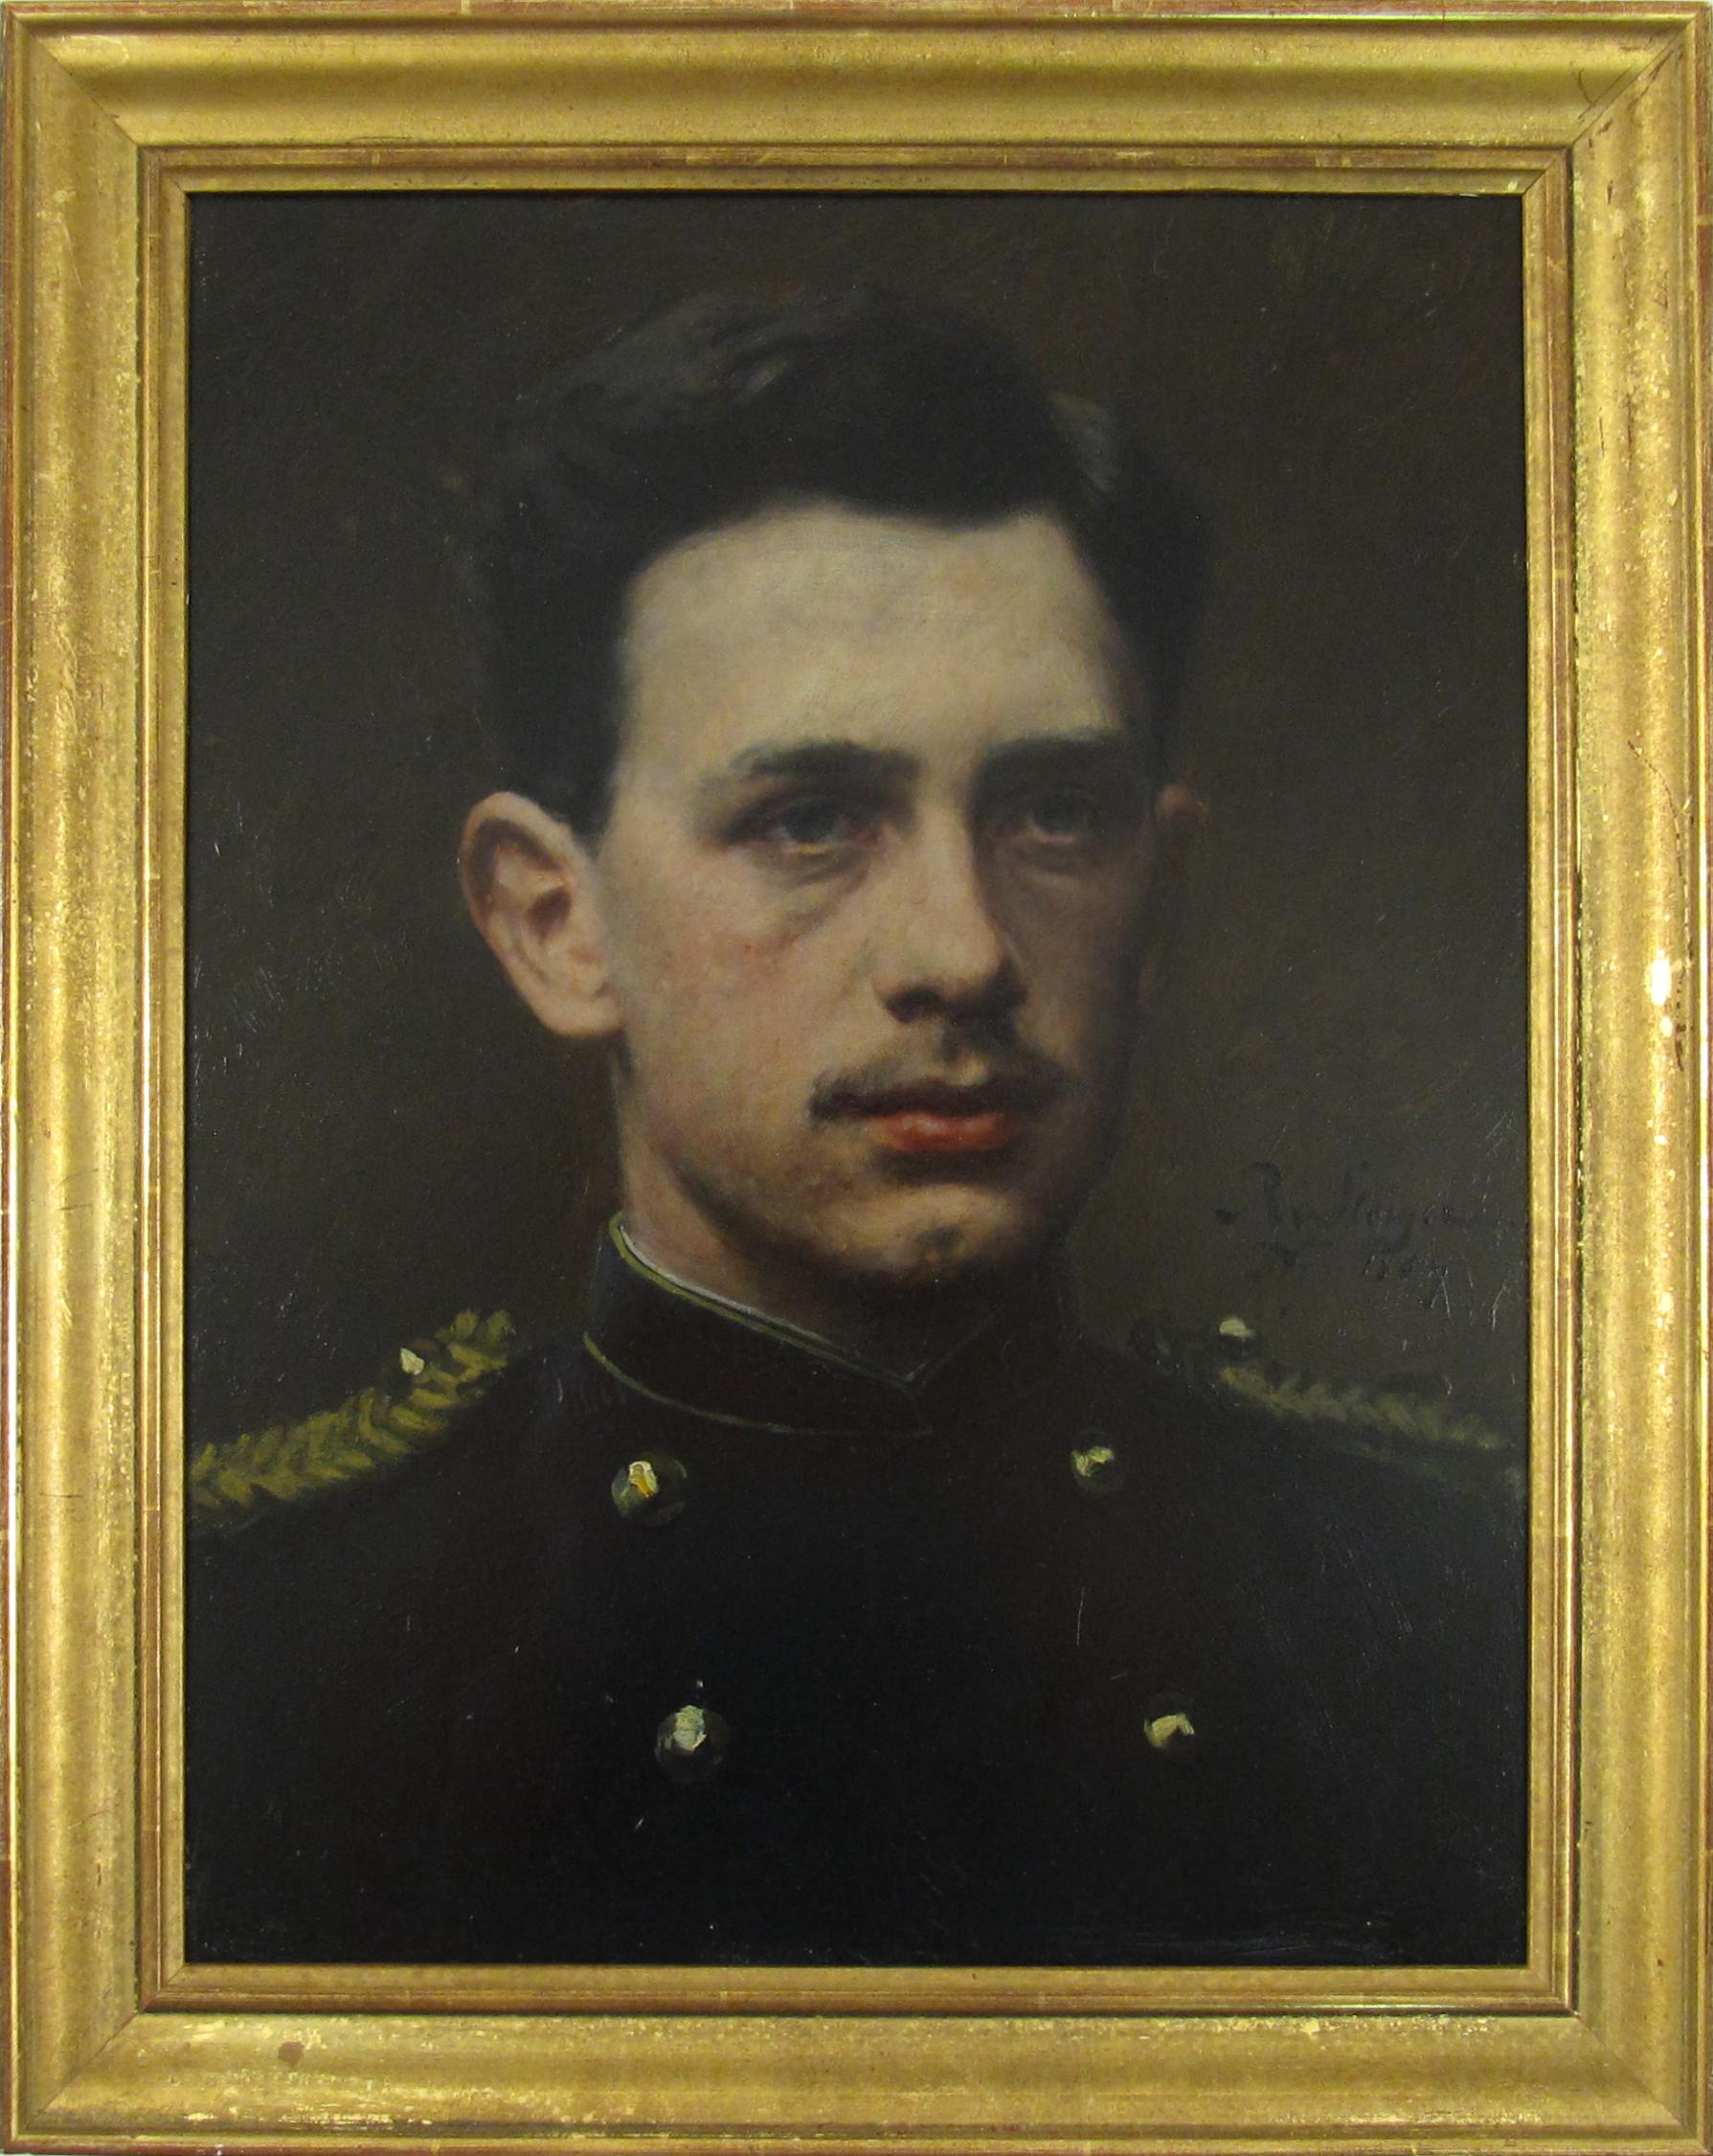 Johann Ludwig Robert von Steiger Portrait Painting - Robert von Steiger (1856-1941) Portrait Dutch Officer A. v. Steiger 1884 Holland